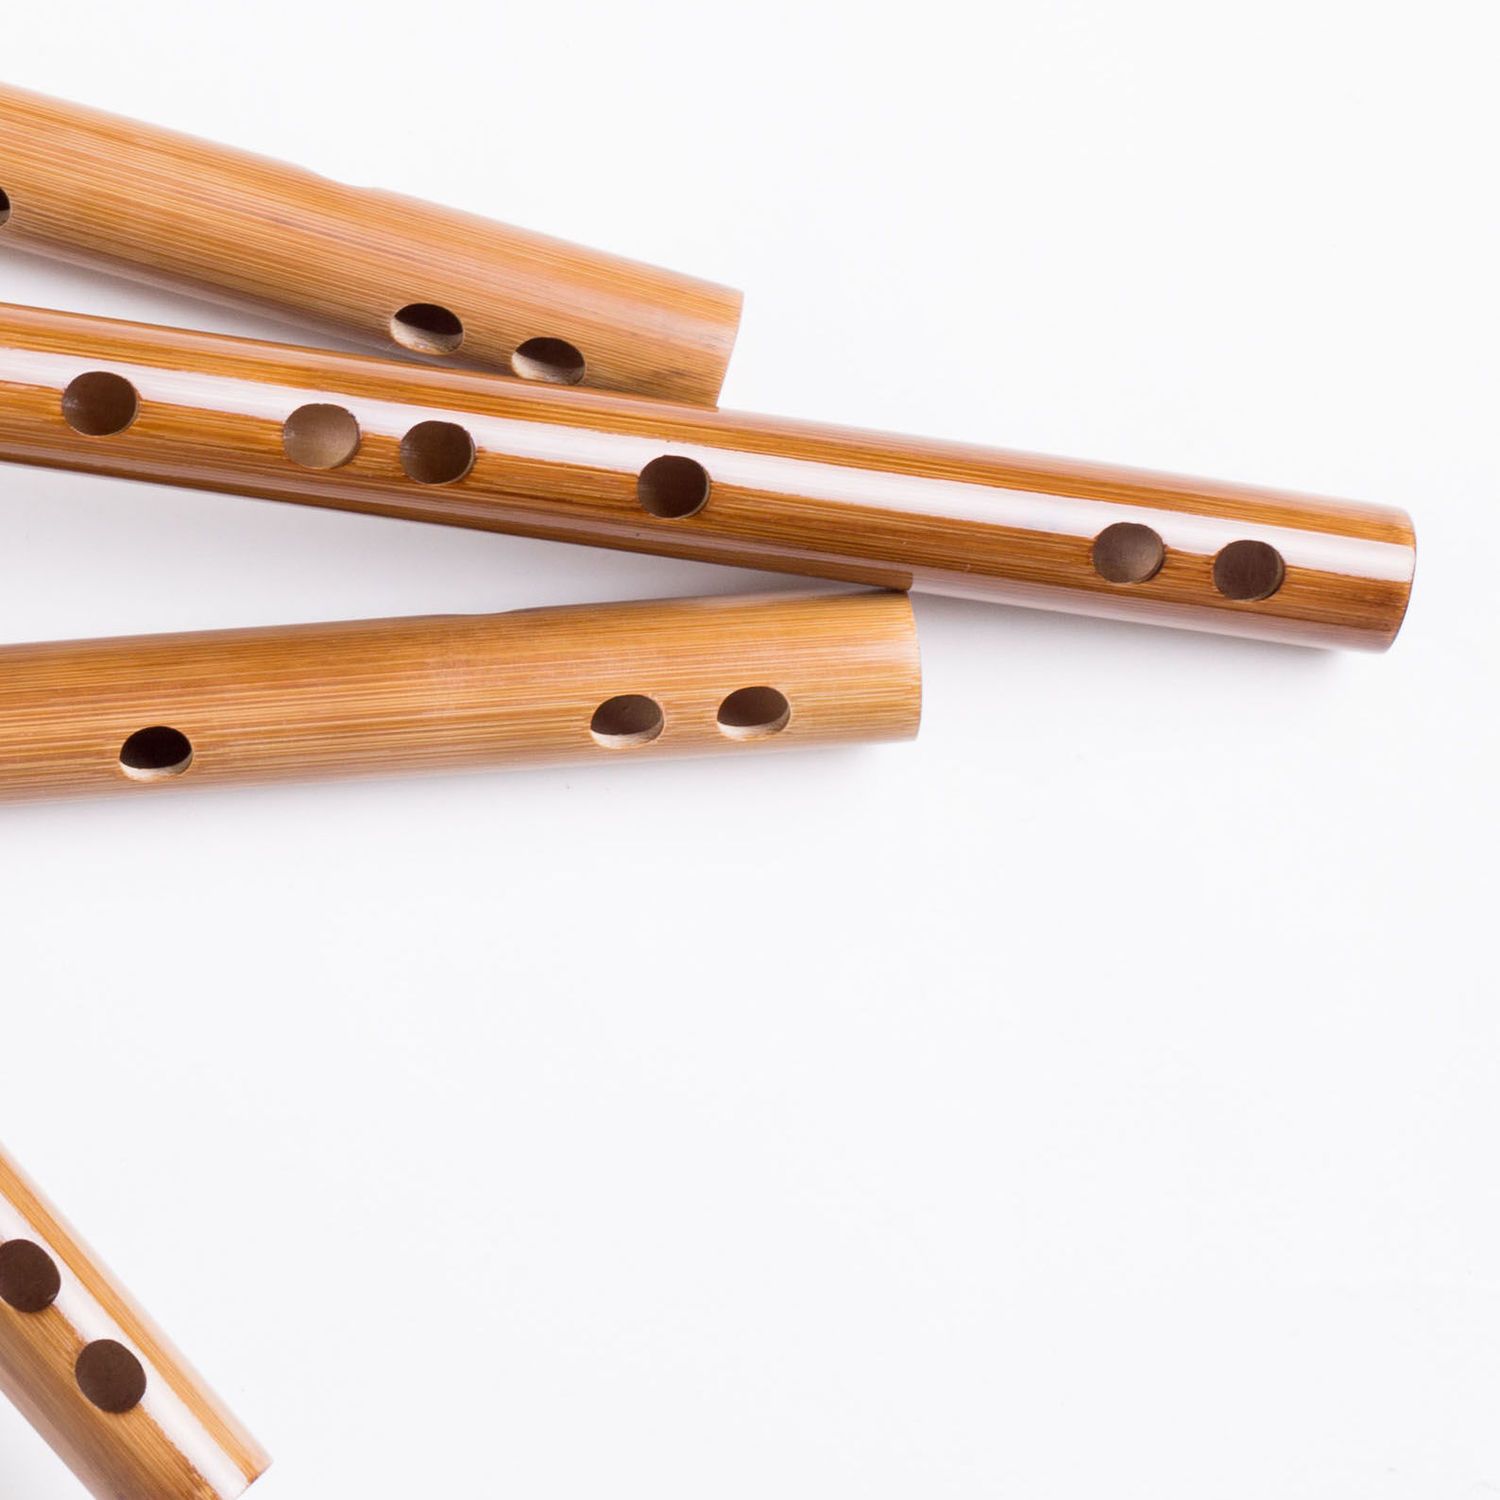 苦竹笛古风横笛学生笛竹笛精致初学成人演奏乐器笛学习入门竹笛子